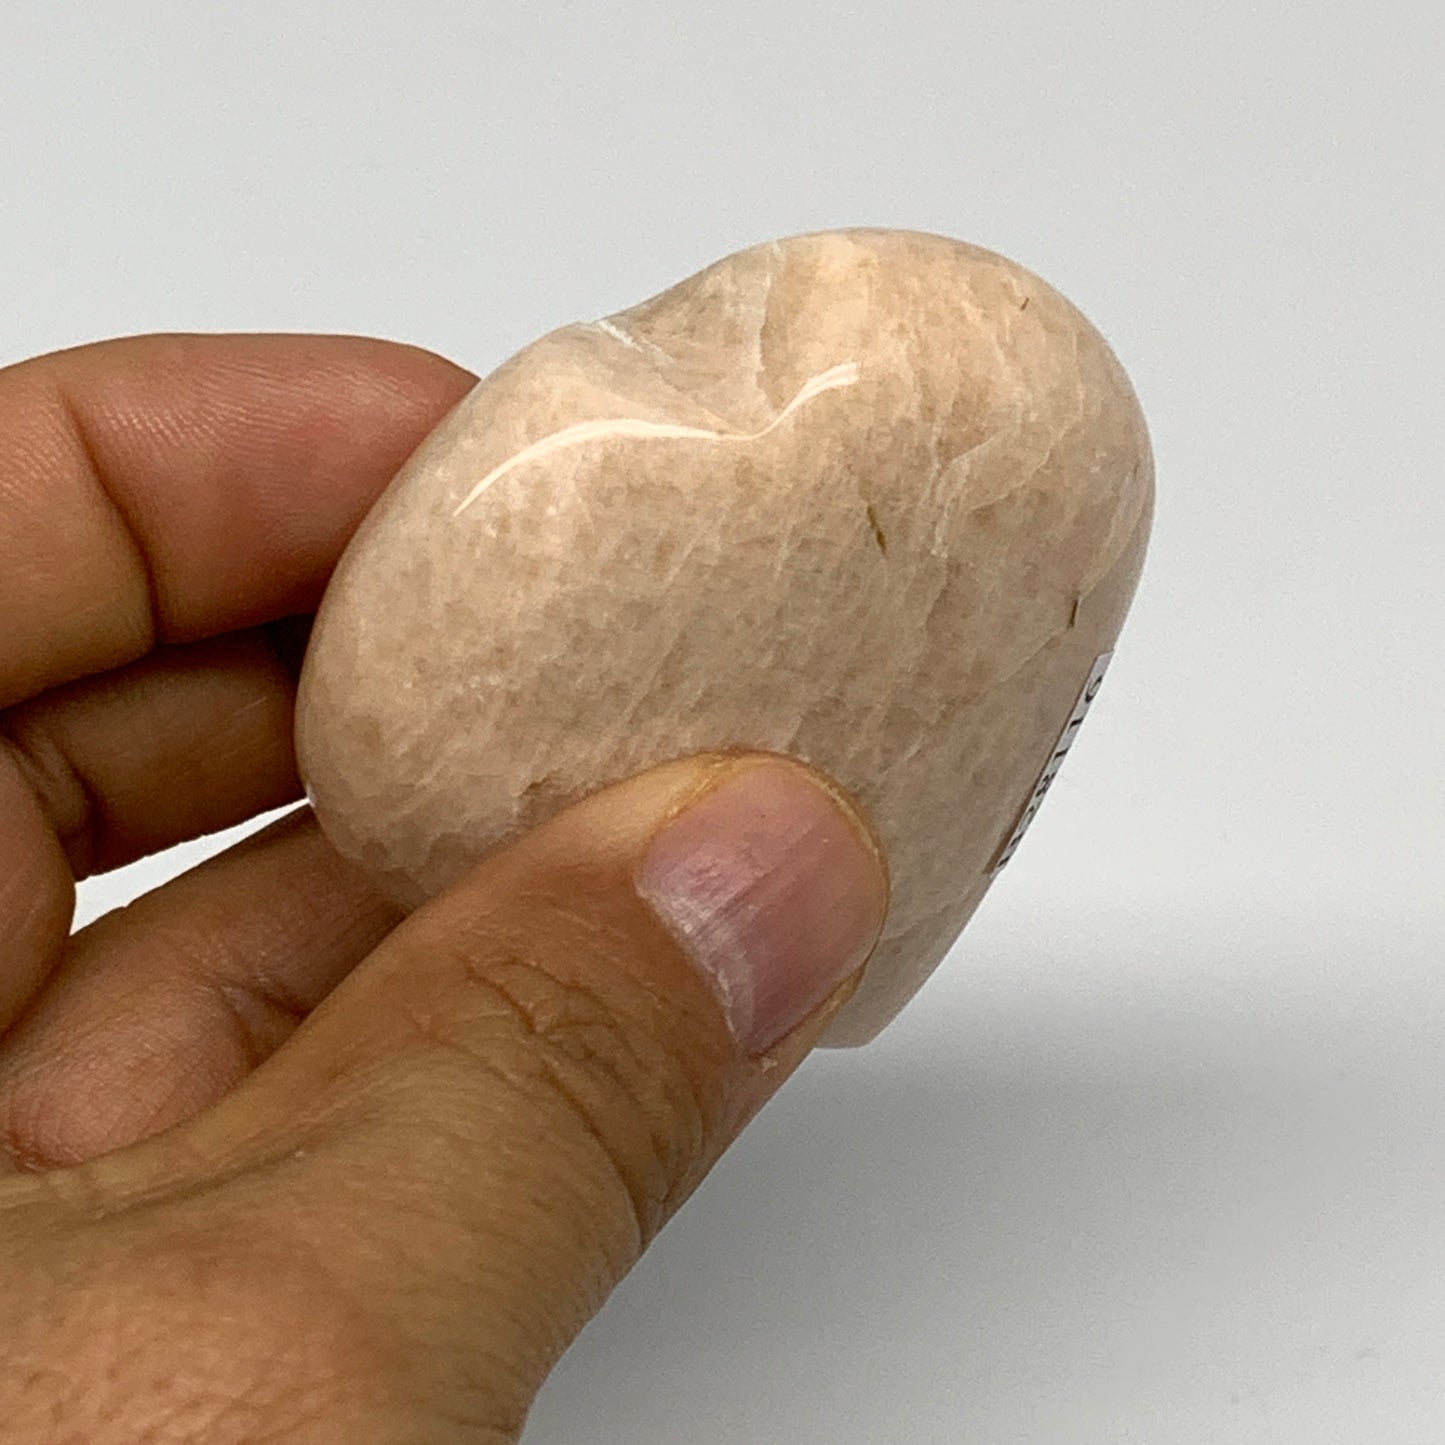 83.7g, 2.1"x2.1"x0.9", Peach Moonstone Heart Crystal Polished Gemstone, B28116